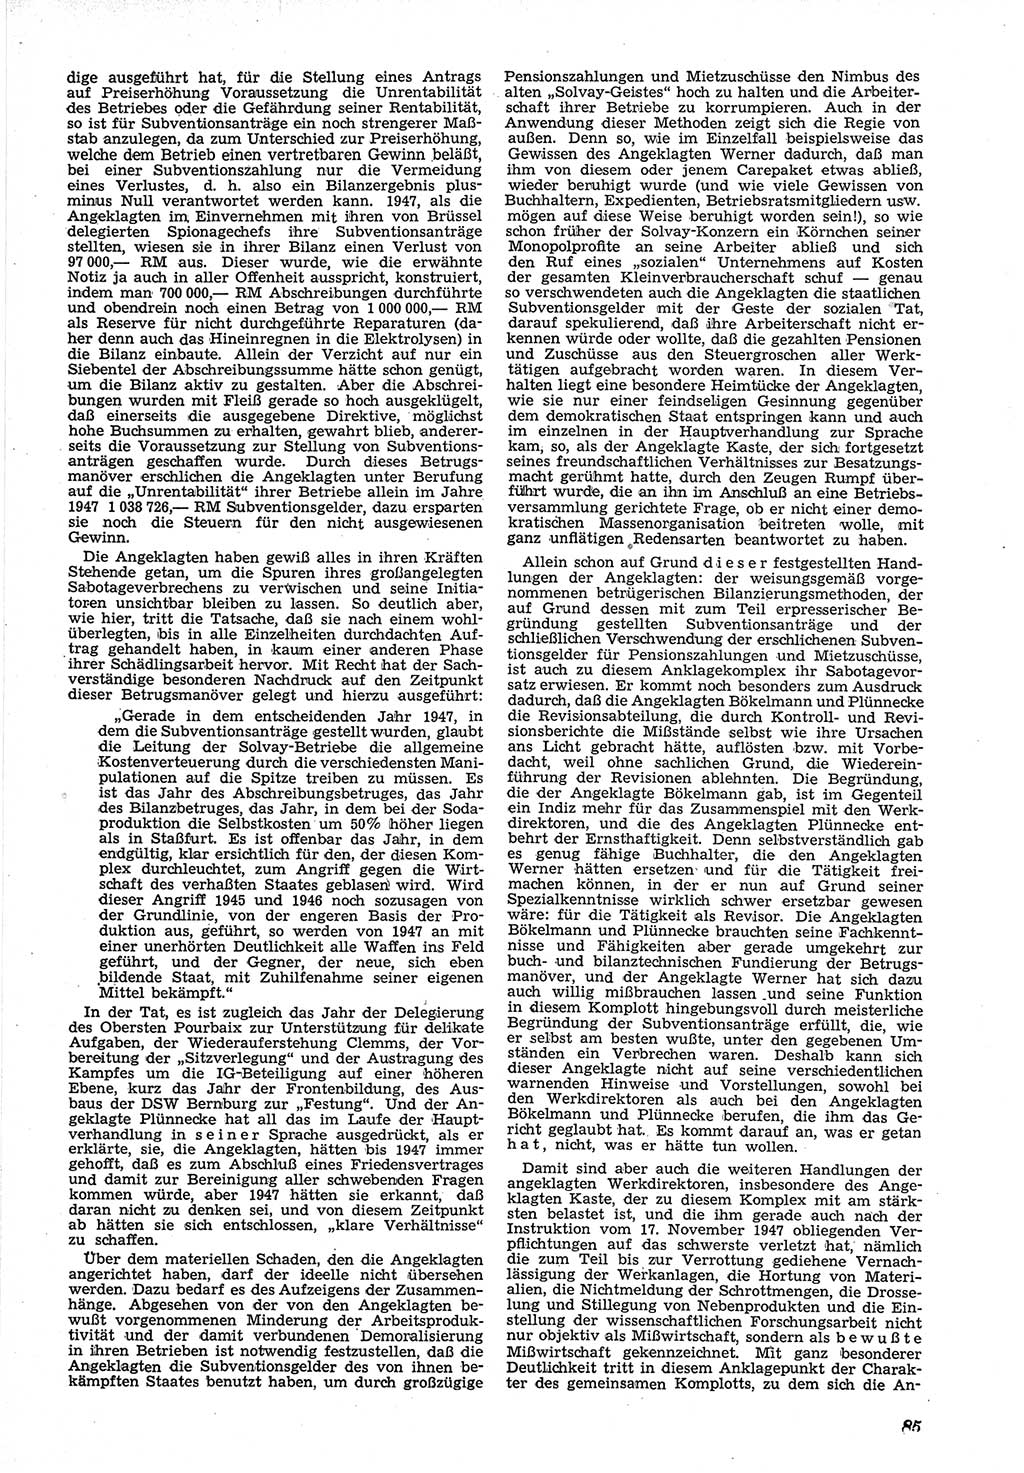 Neue Justiz (NJ), Zeitschrift für Recht und Rechtswissenschaft [Deutsche Demokratische Republik (DDR)], 5. Jahrgang 1951, Seite 85 (NJ DDR 1951, S. 85)